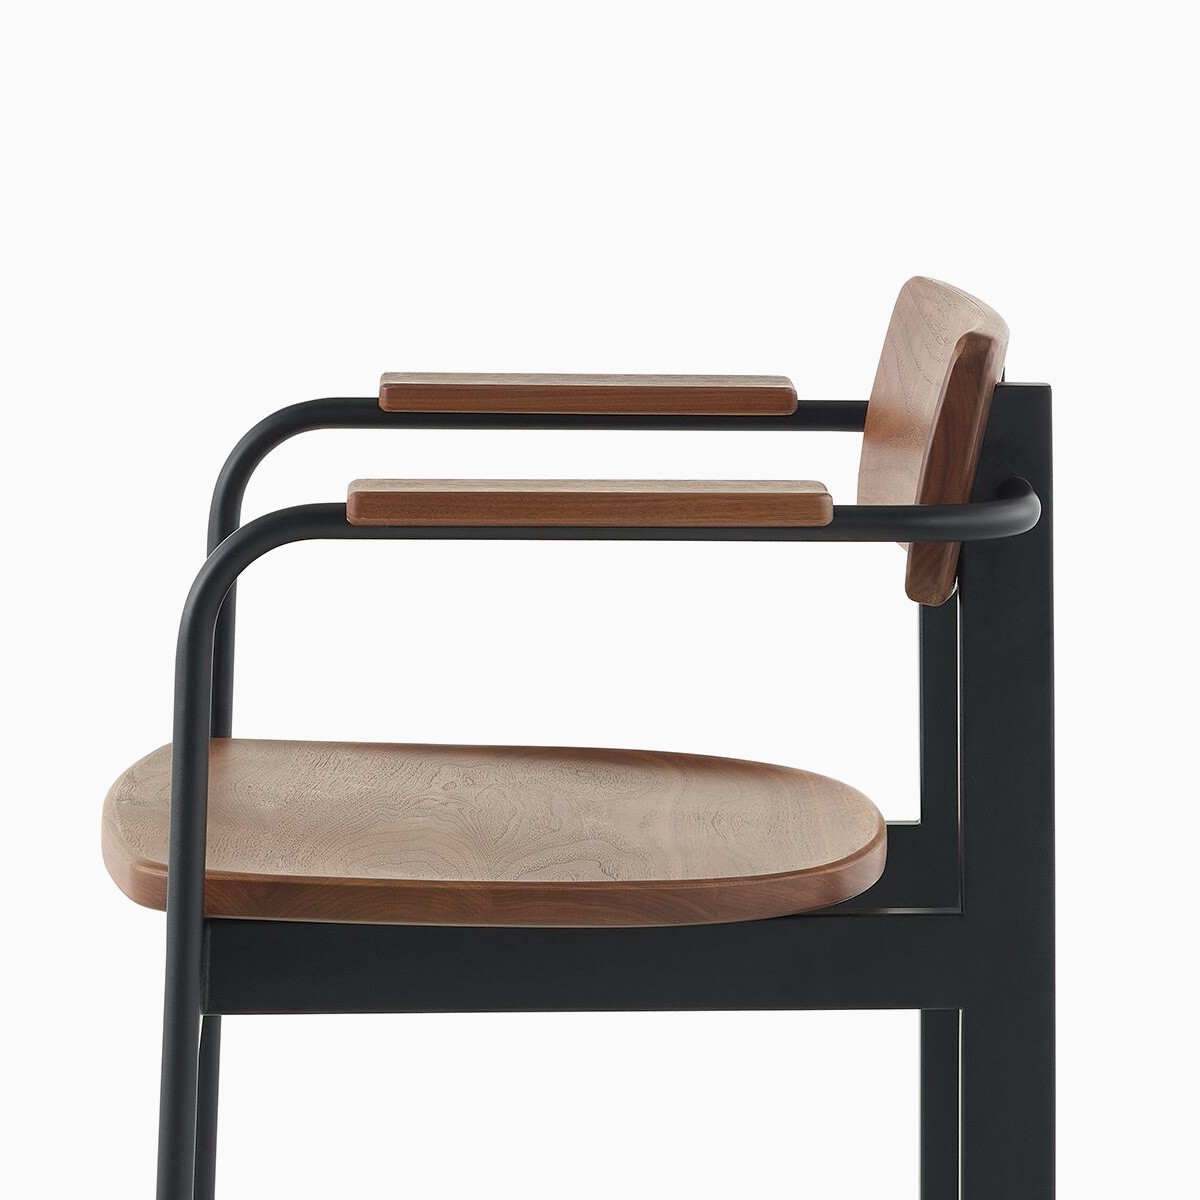 Ein Betwixt Stuhl mit Rückenlehne, Sitzfläche und Armlehnen in Nussbaum und Rahmen in Schwarz.